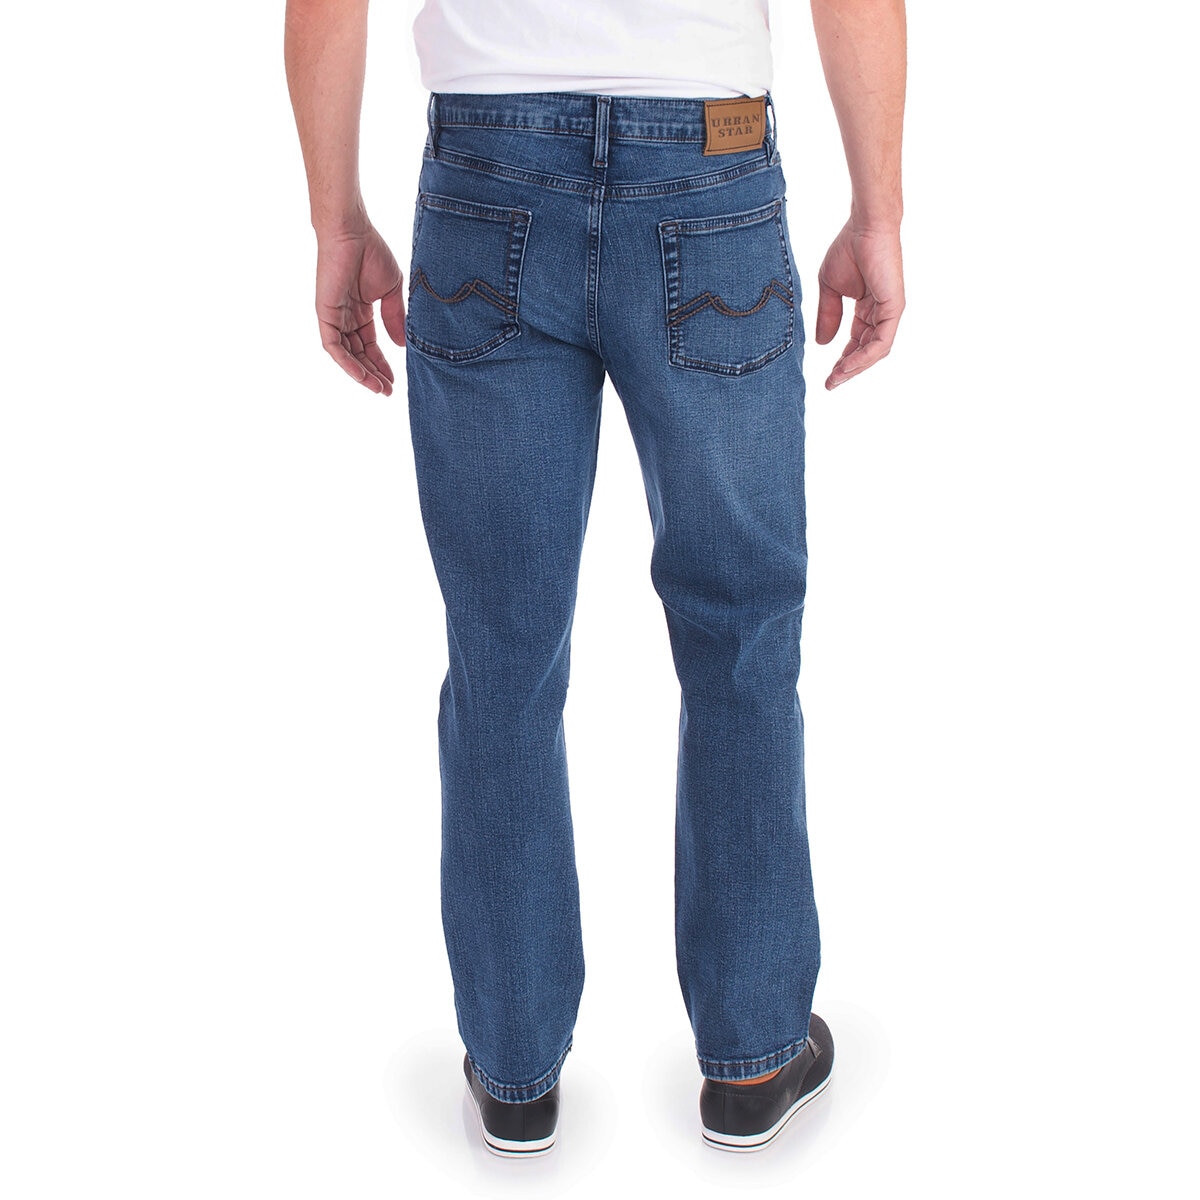 Urban Star Jeans para Caballero Azul Medio 32x30